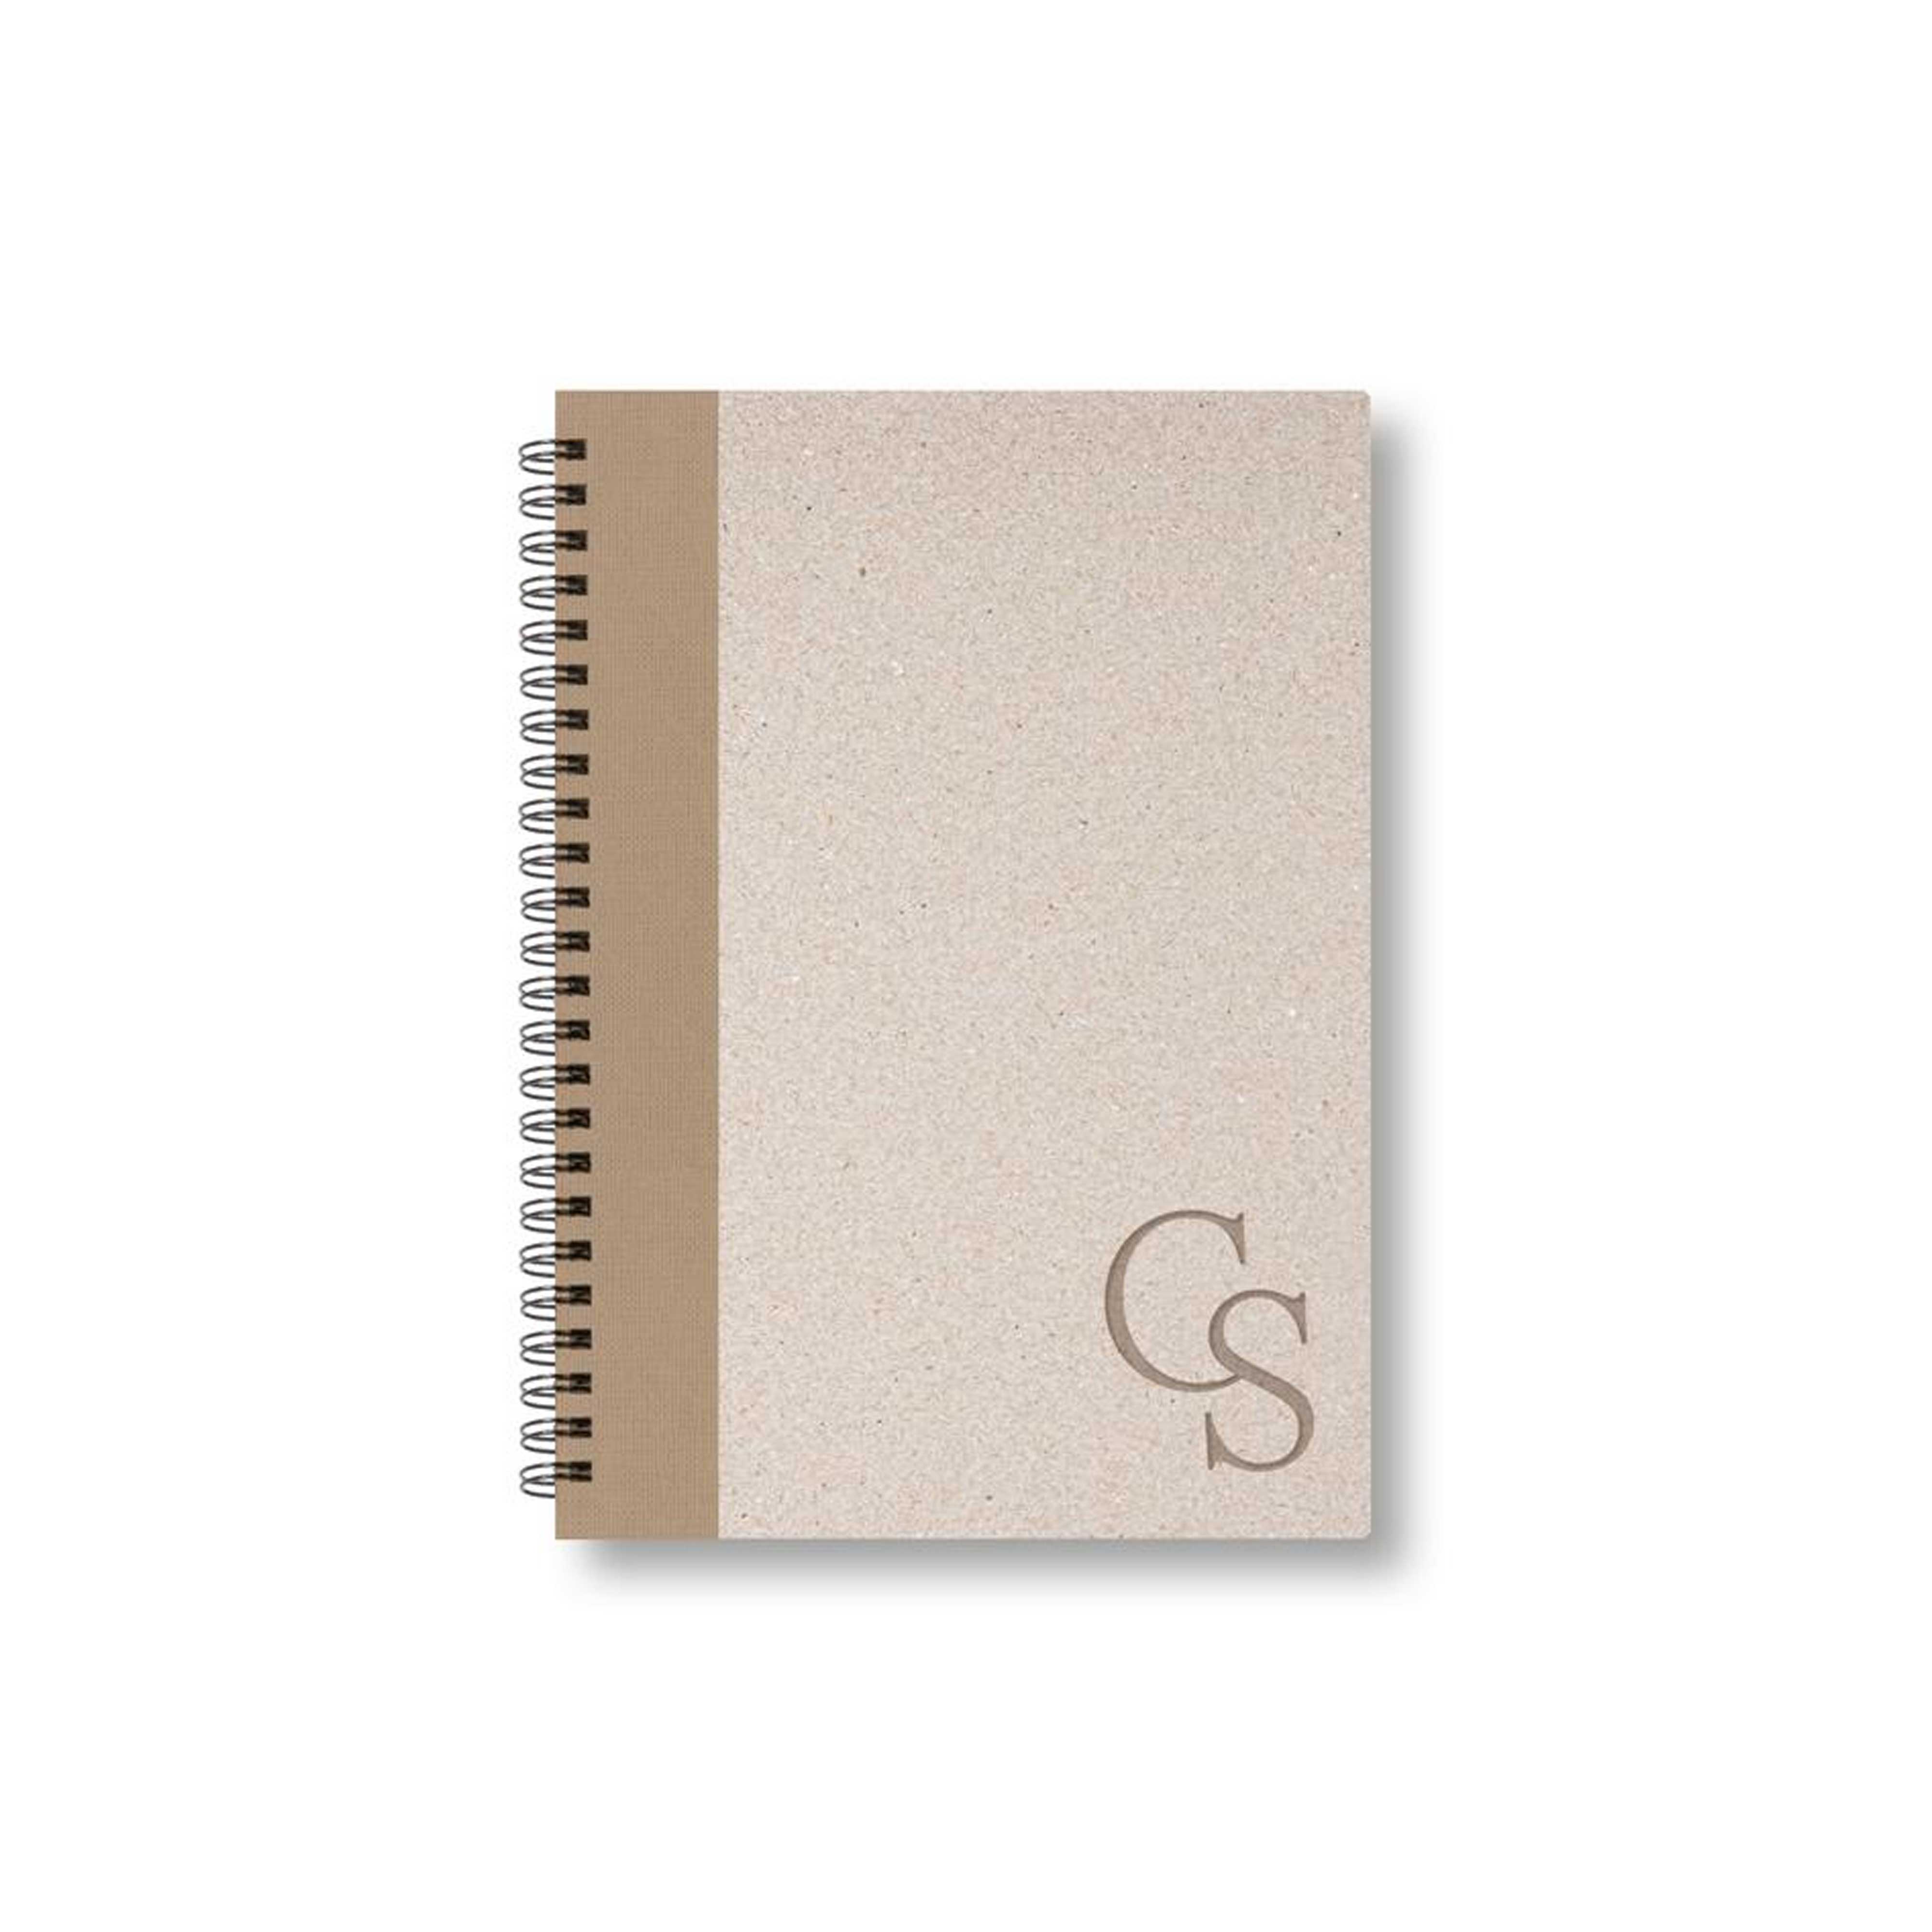 BOBO Zápisník, B6, čtverečkovaný, hnědý, konfiguruj si obálku